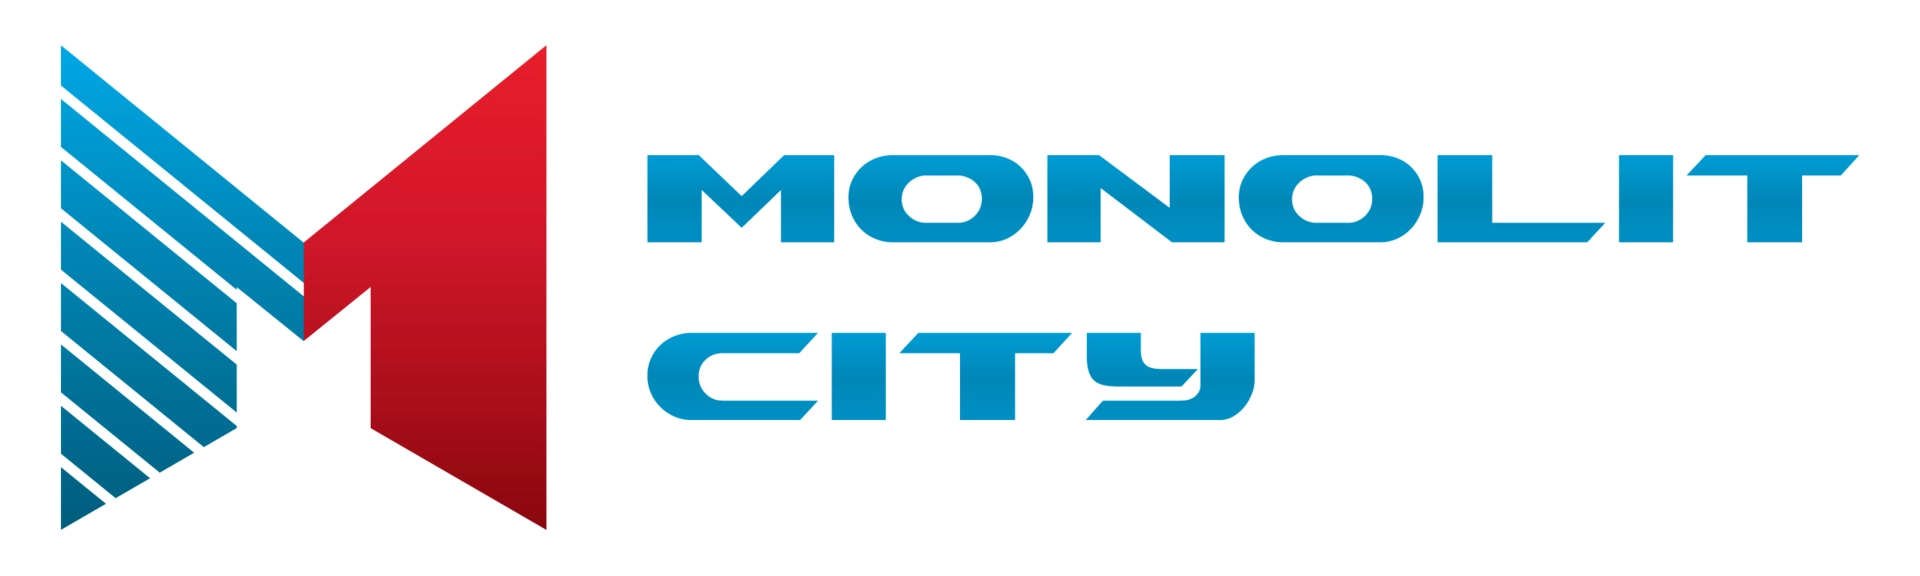 ООО Монолит Сити: отзывы от сотрудников и партнеров